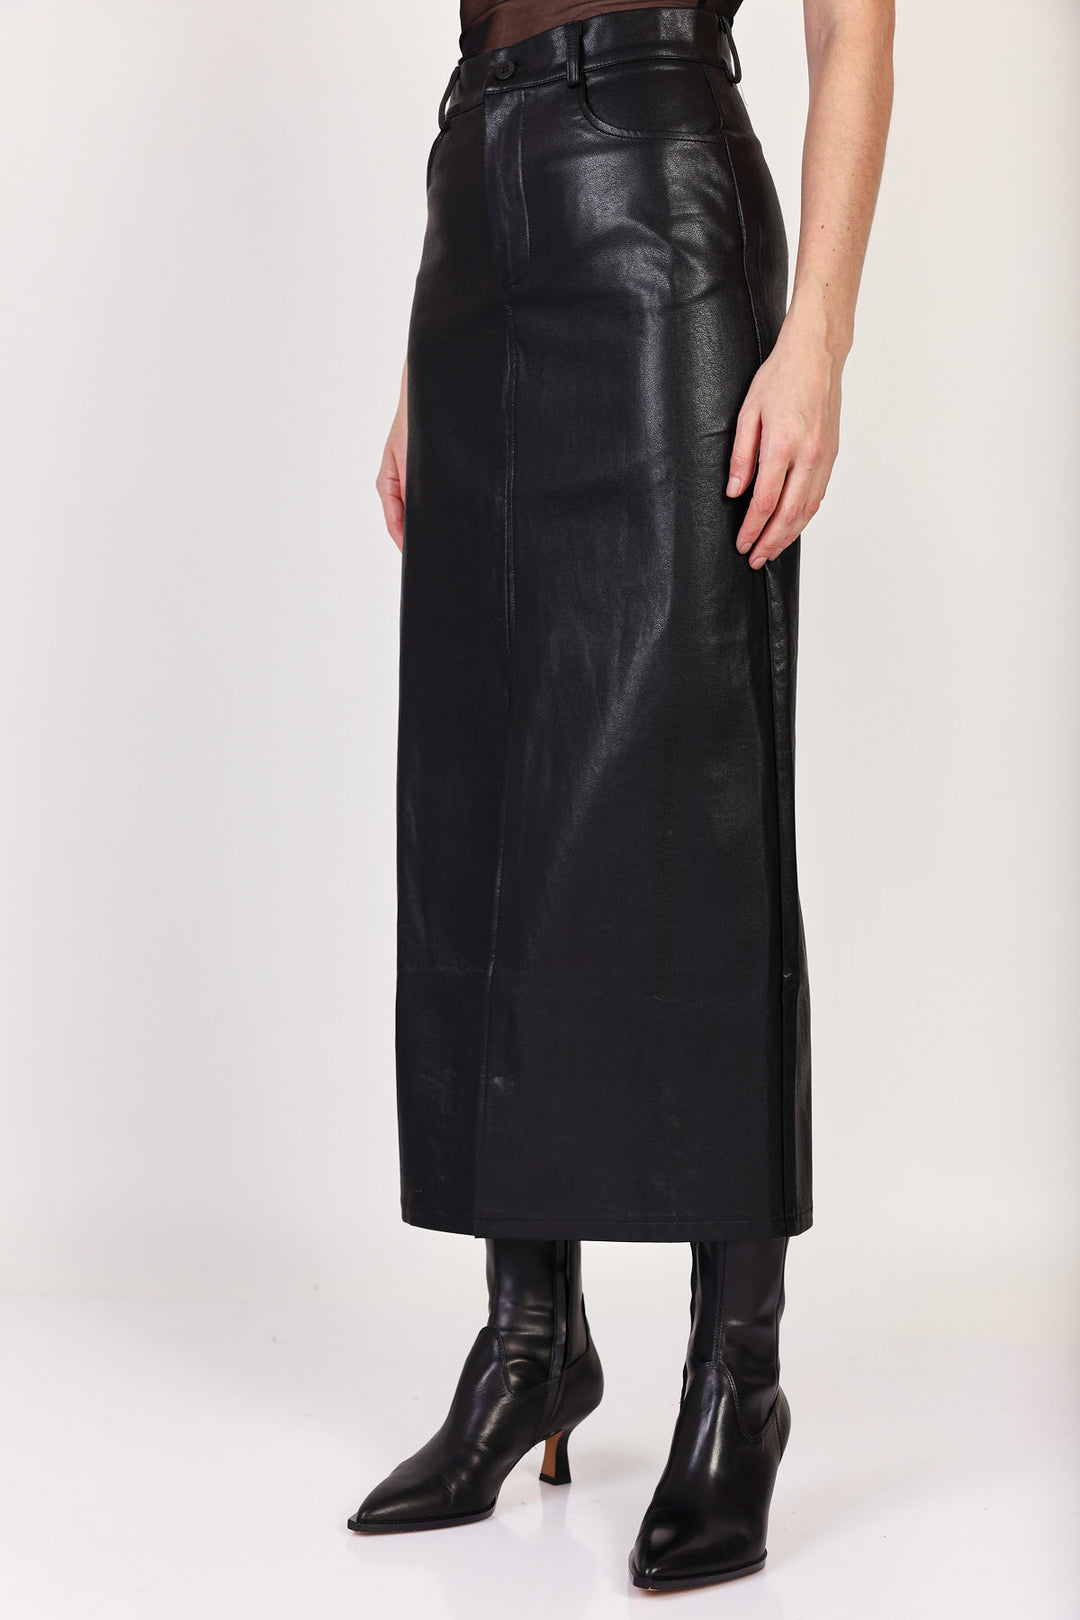 חצאית דמוי עור Camille בצבע שחור